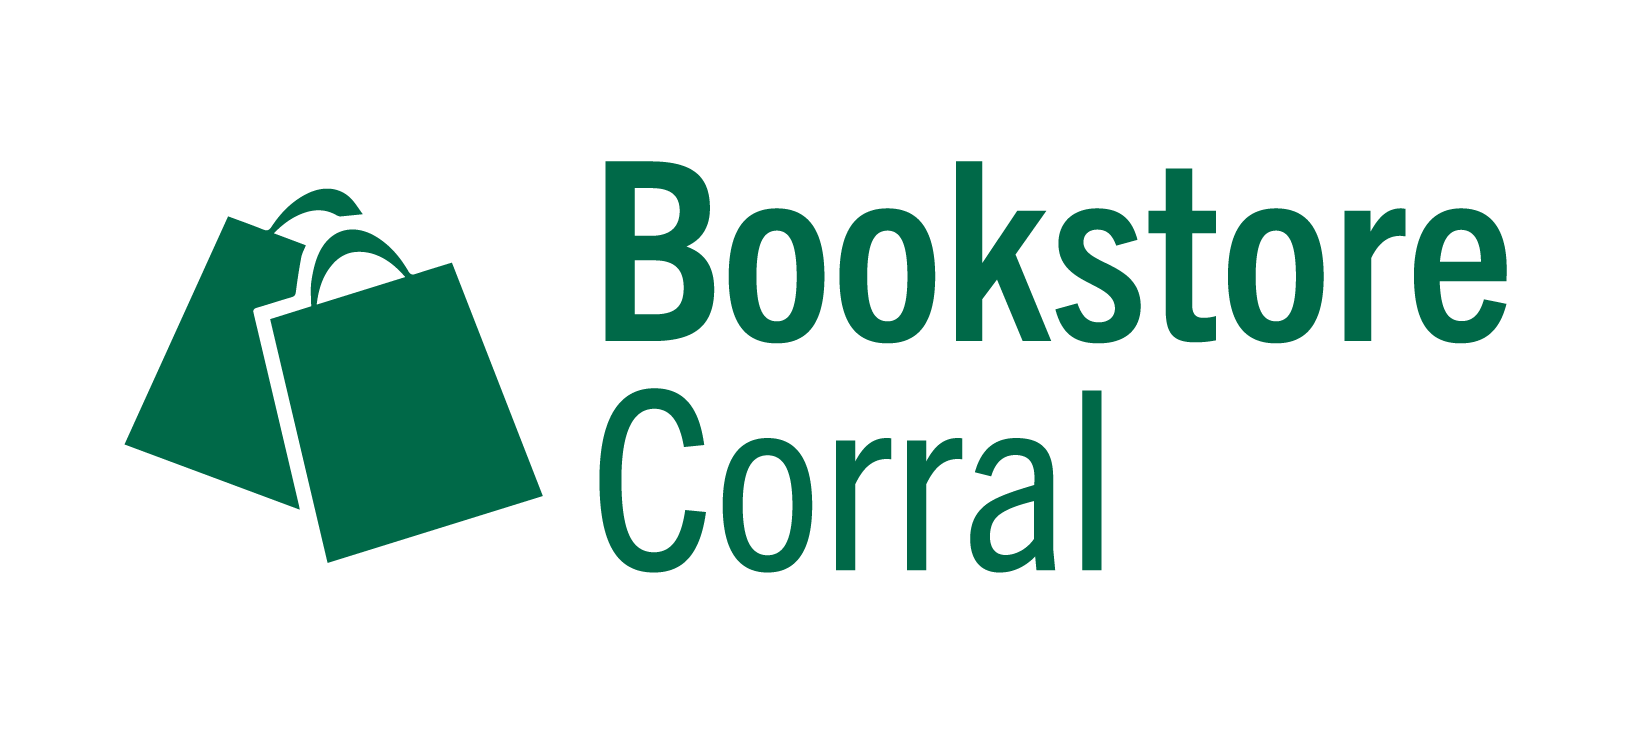 MSC Bookstore Corral Image